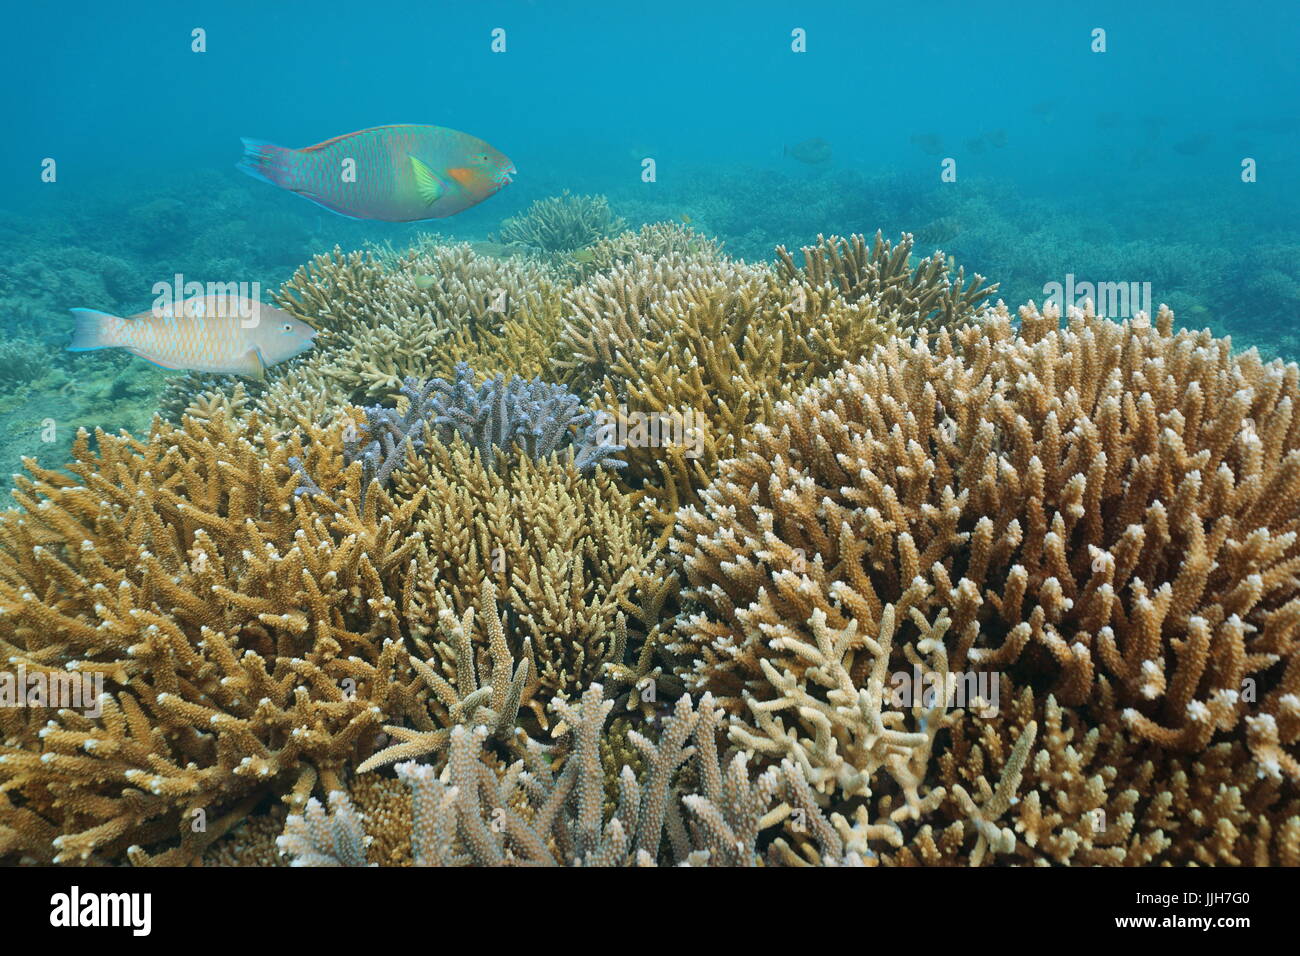 Barriera Corallina con una sana Acropora staghorn coralli sott'acqua nell'Oceano Pacifico, Nuova Caledonia, Oceania Foto Stock